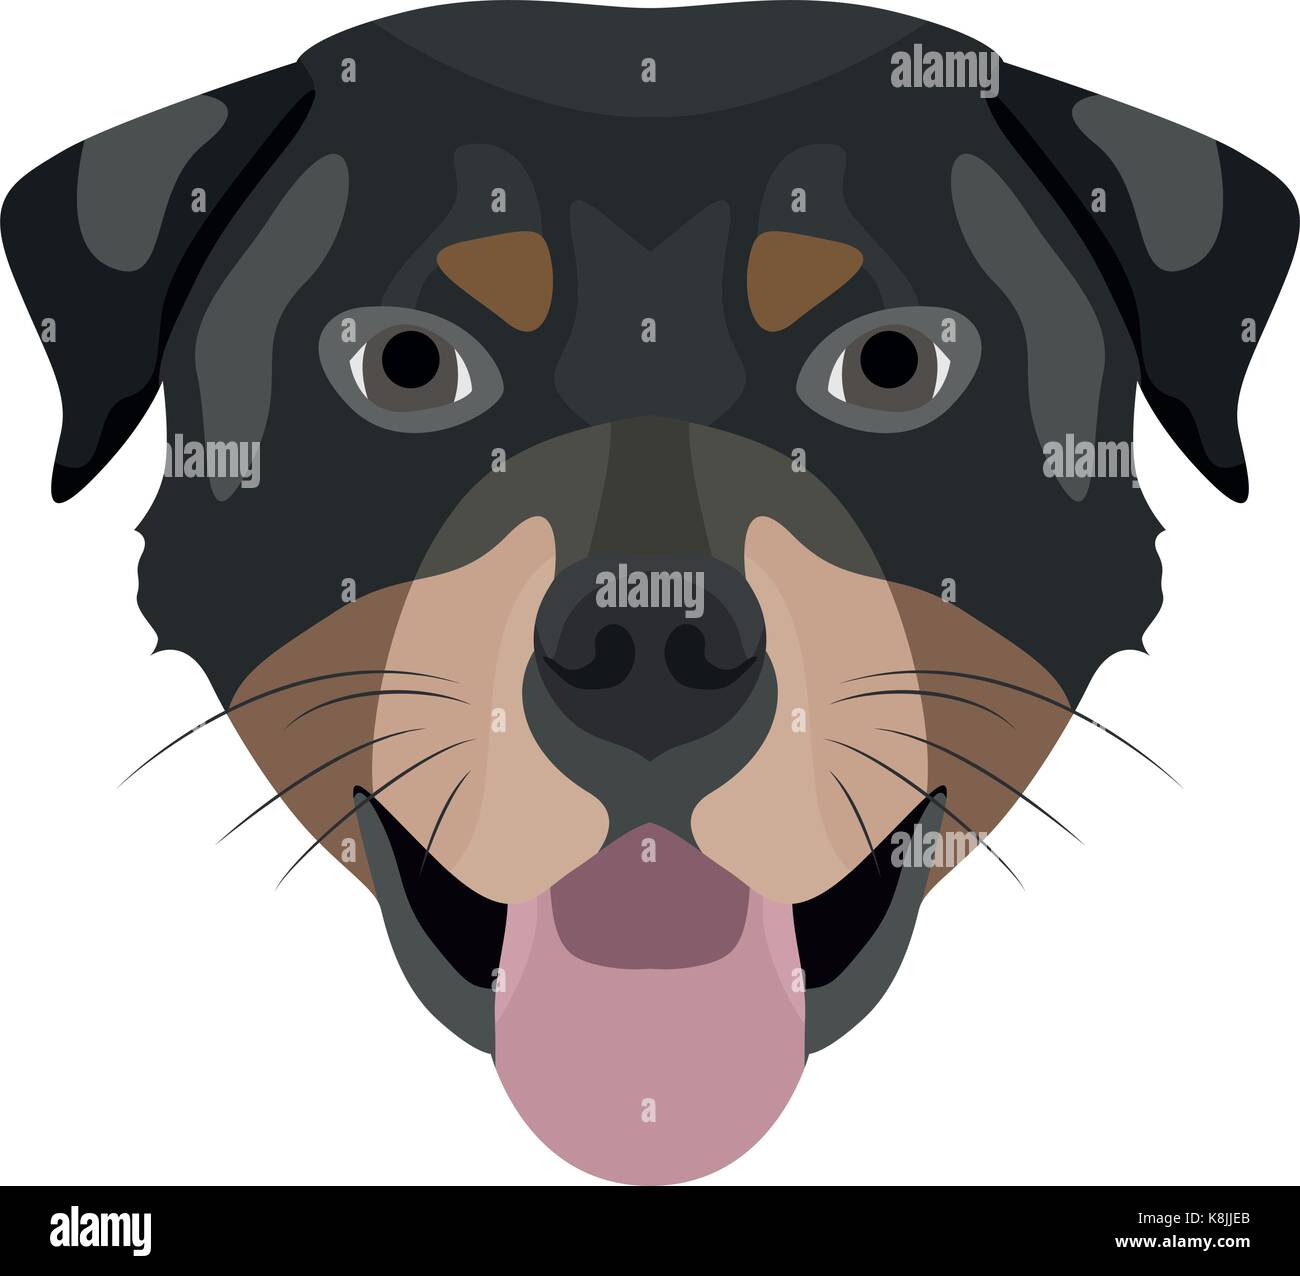 Illustrazione cane Rottweiler per l'uso creativo in graphic design Illustrazione Vettoriale